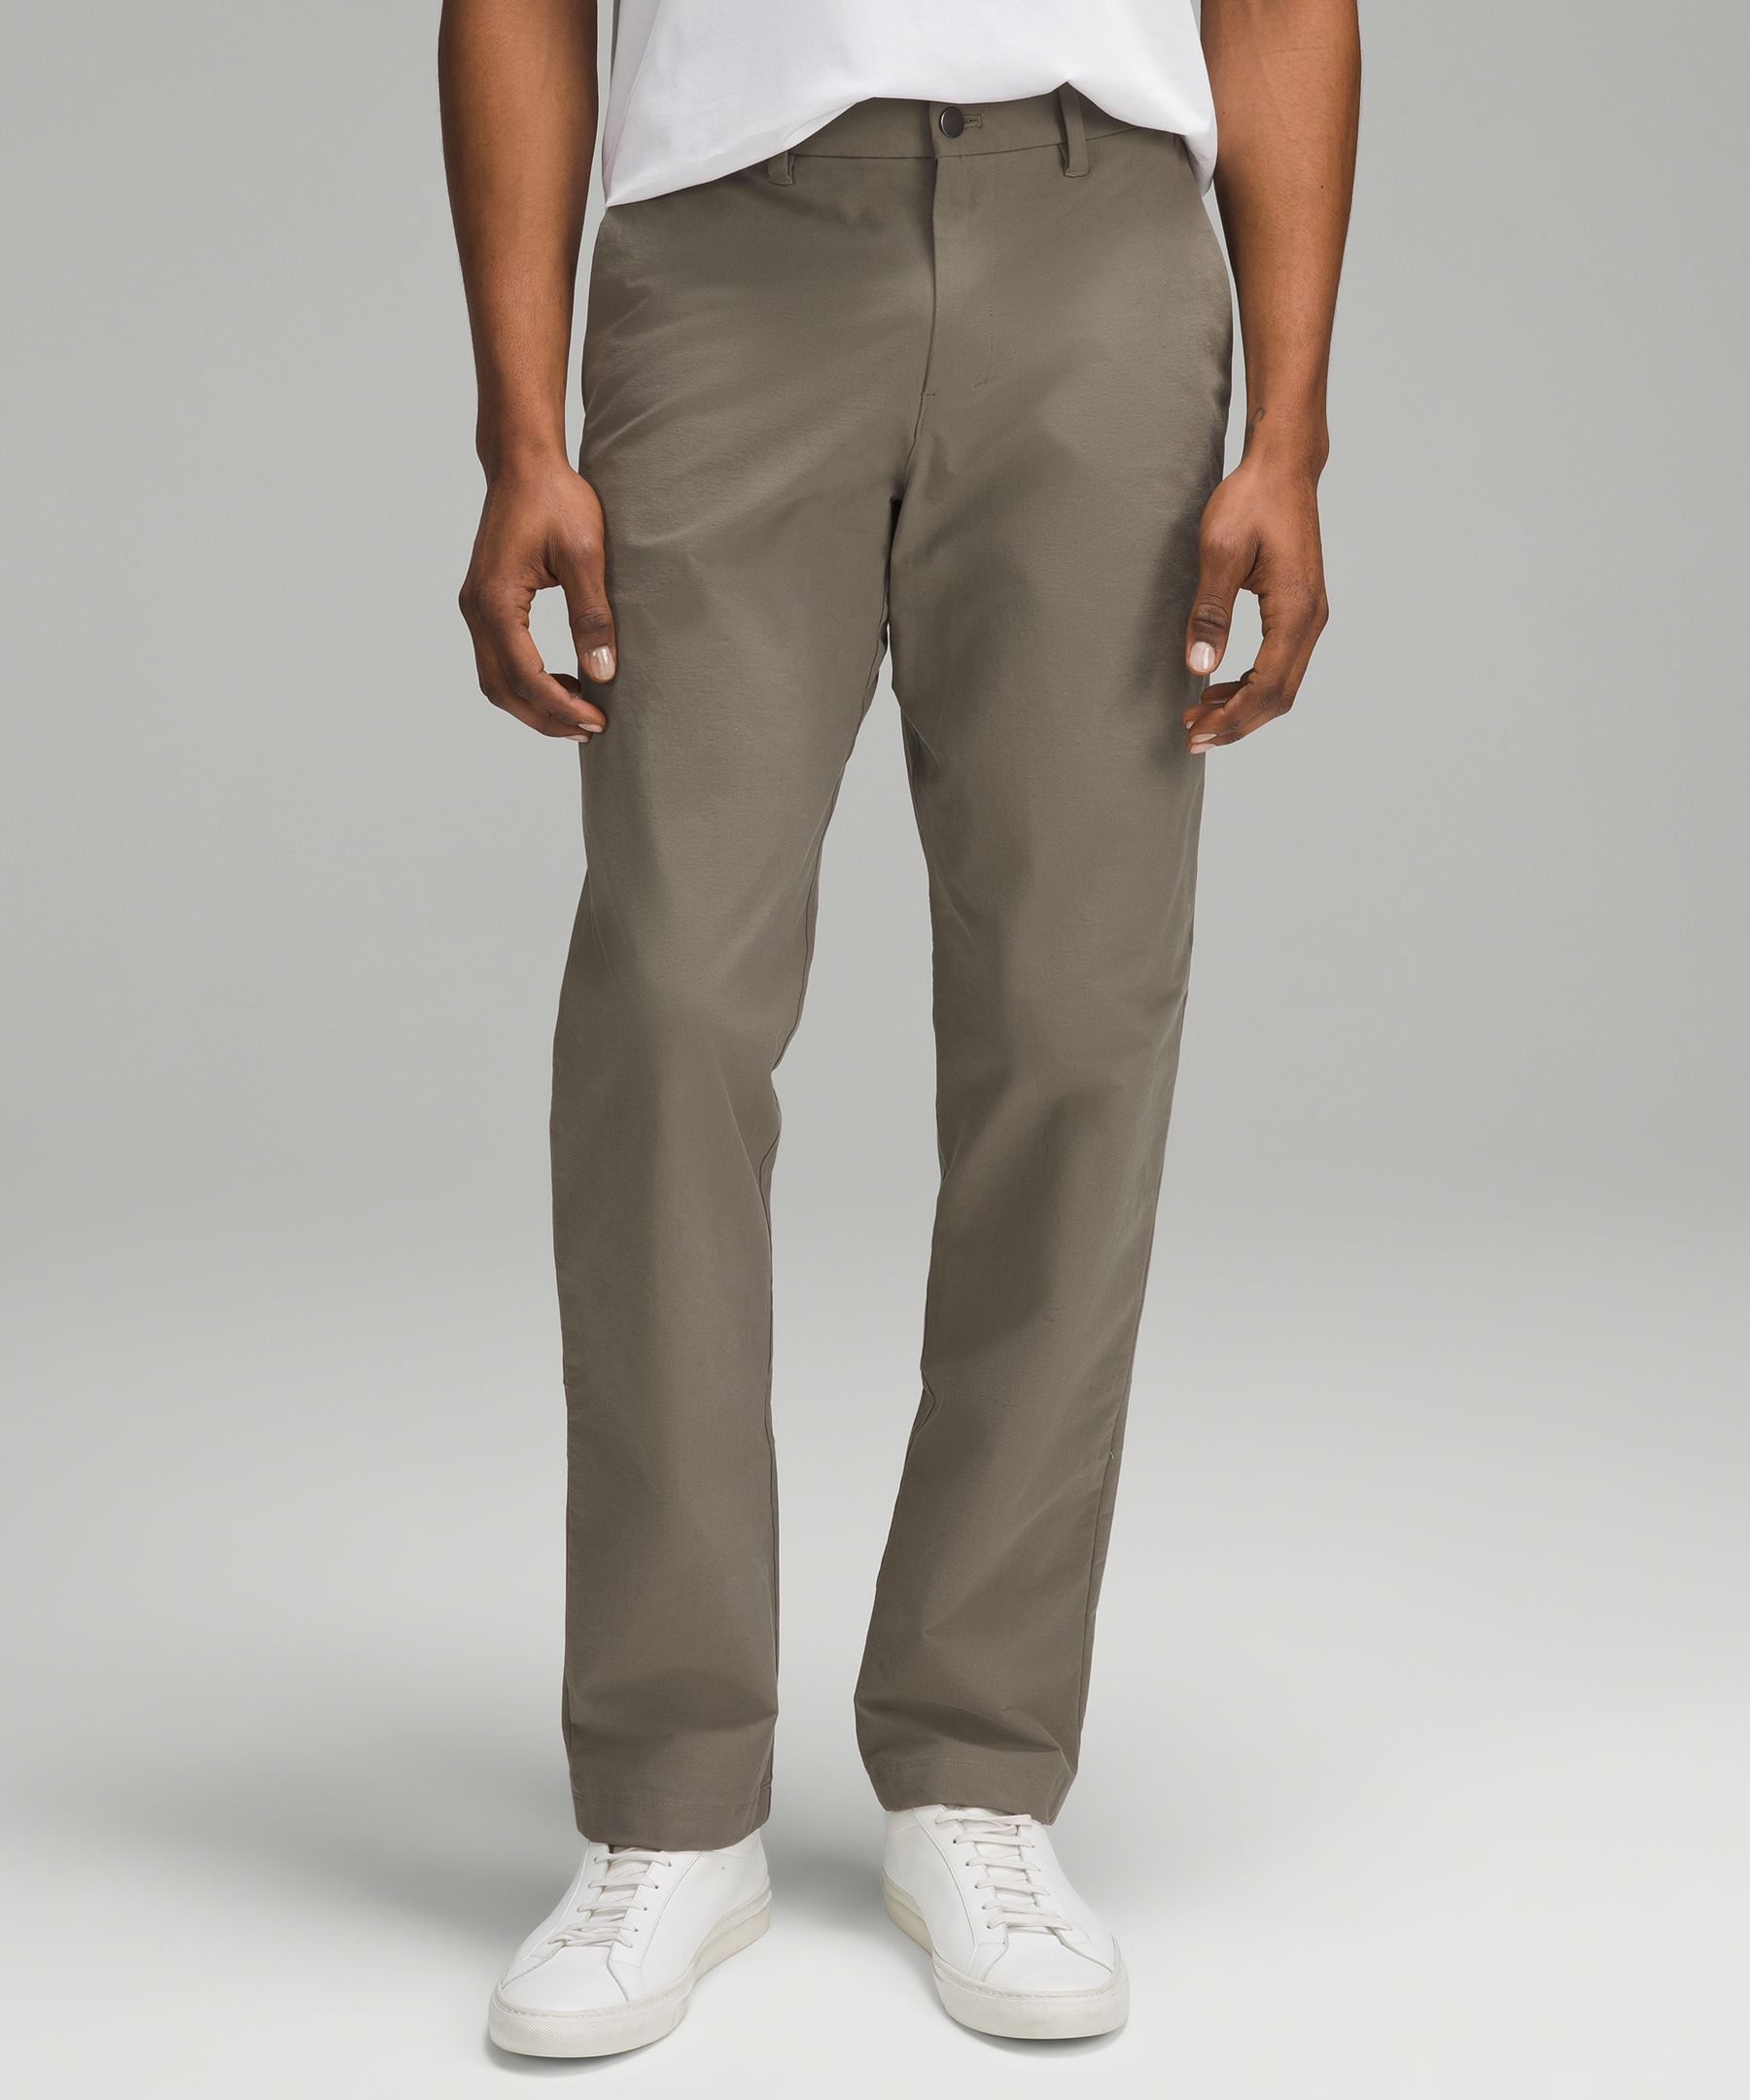 ABC Classic-Fit Trouser 30"L *Stretch Cotton VersaTwill | Men's Trousers